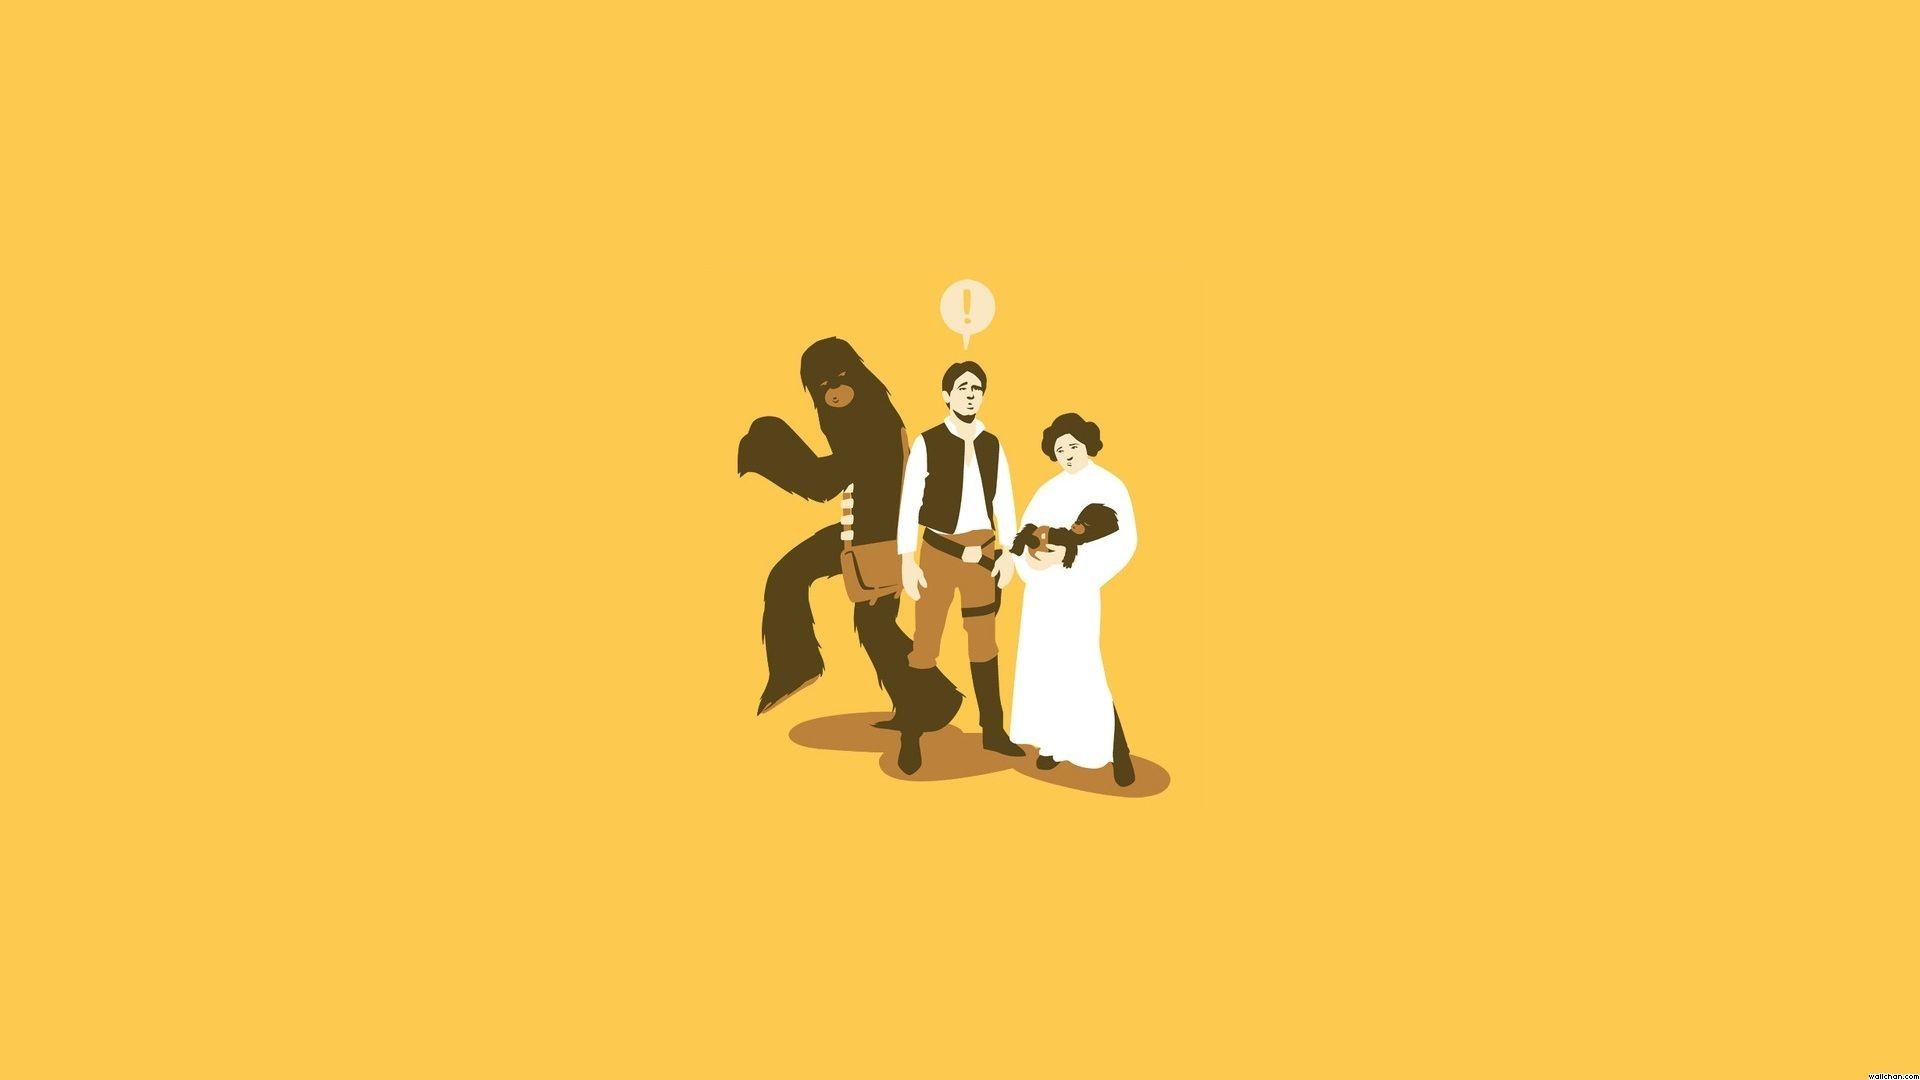 Funny Star Wars Wallpaper